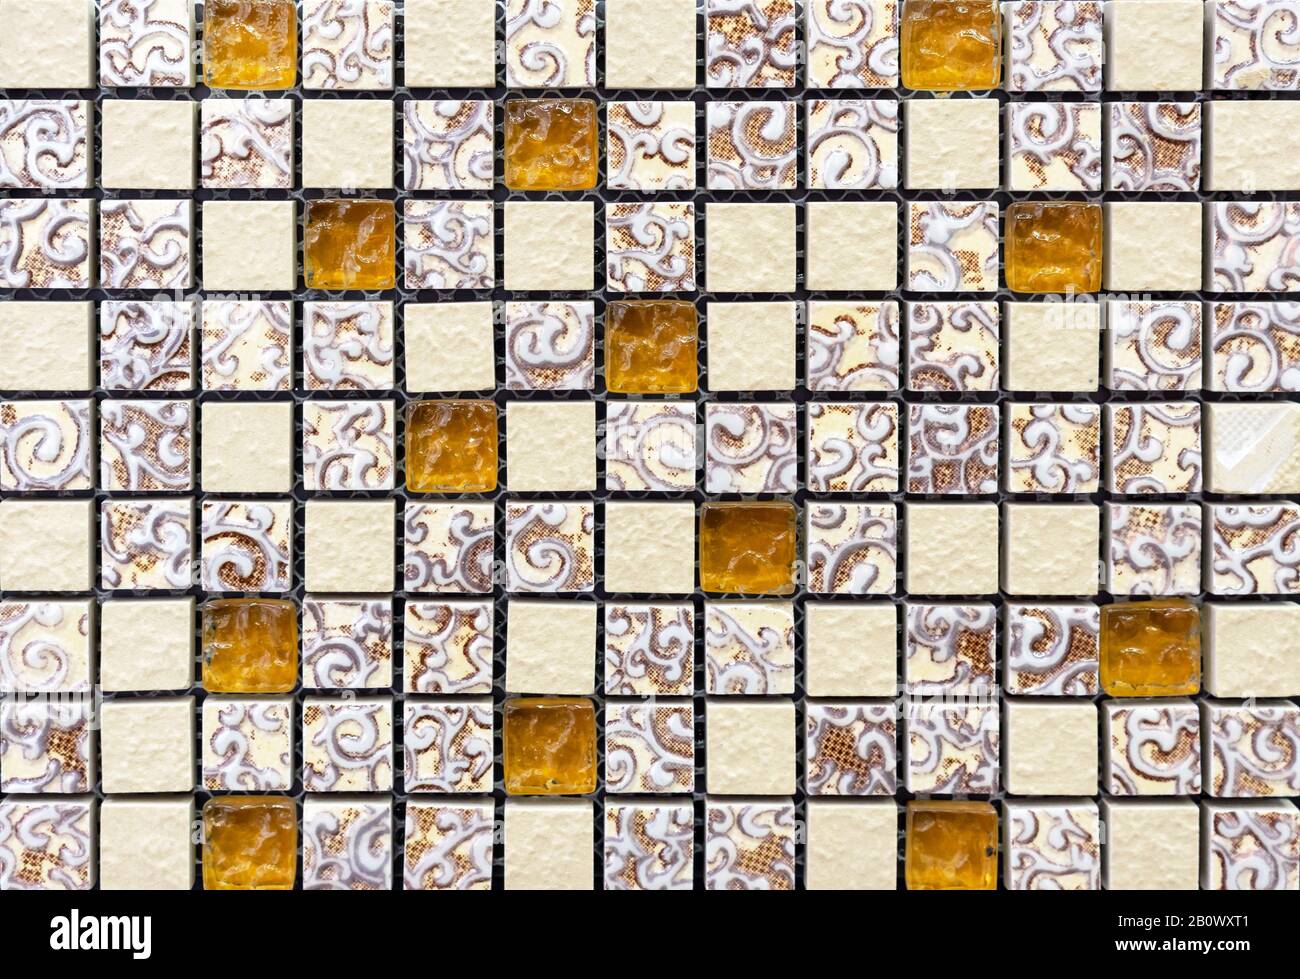 Carreaux de mosaïque en céramique avec carrés jaunes et beiges. Banque D'Images